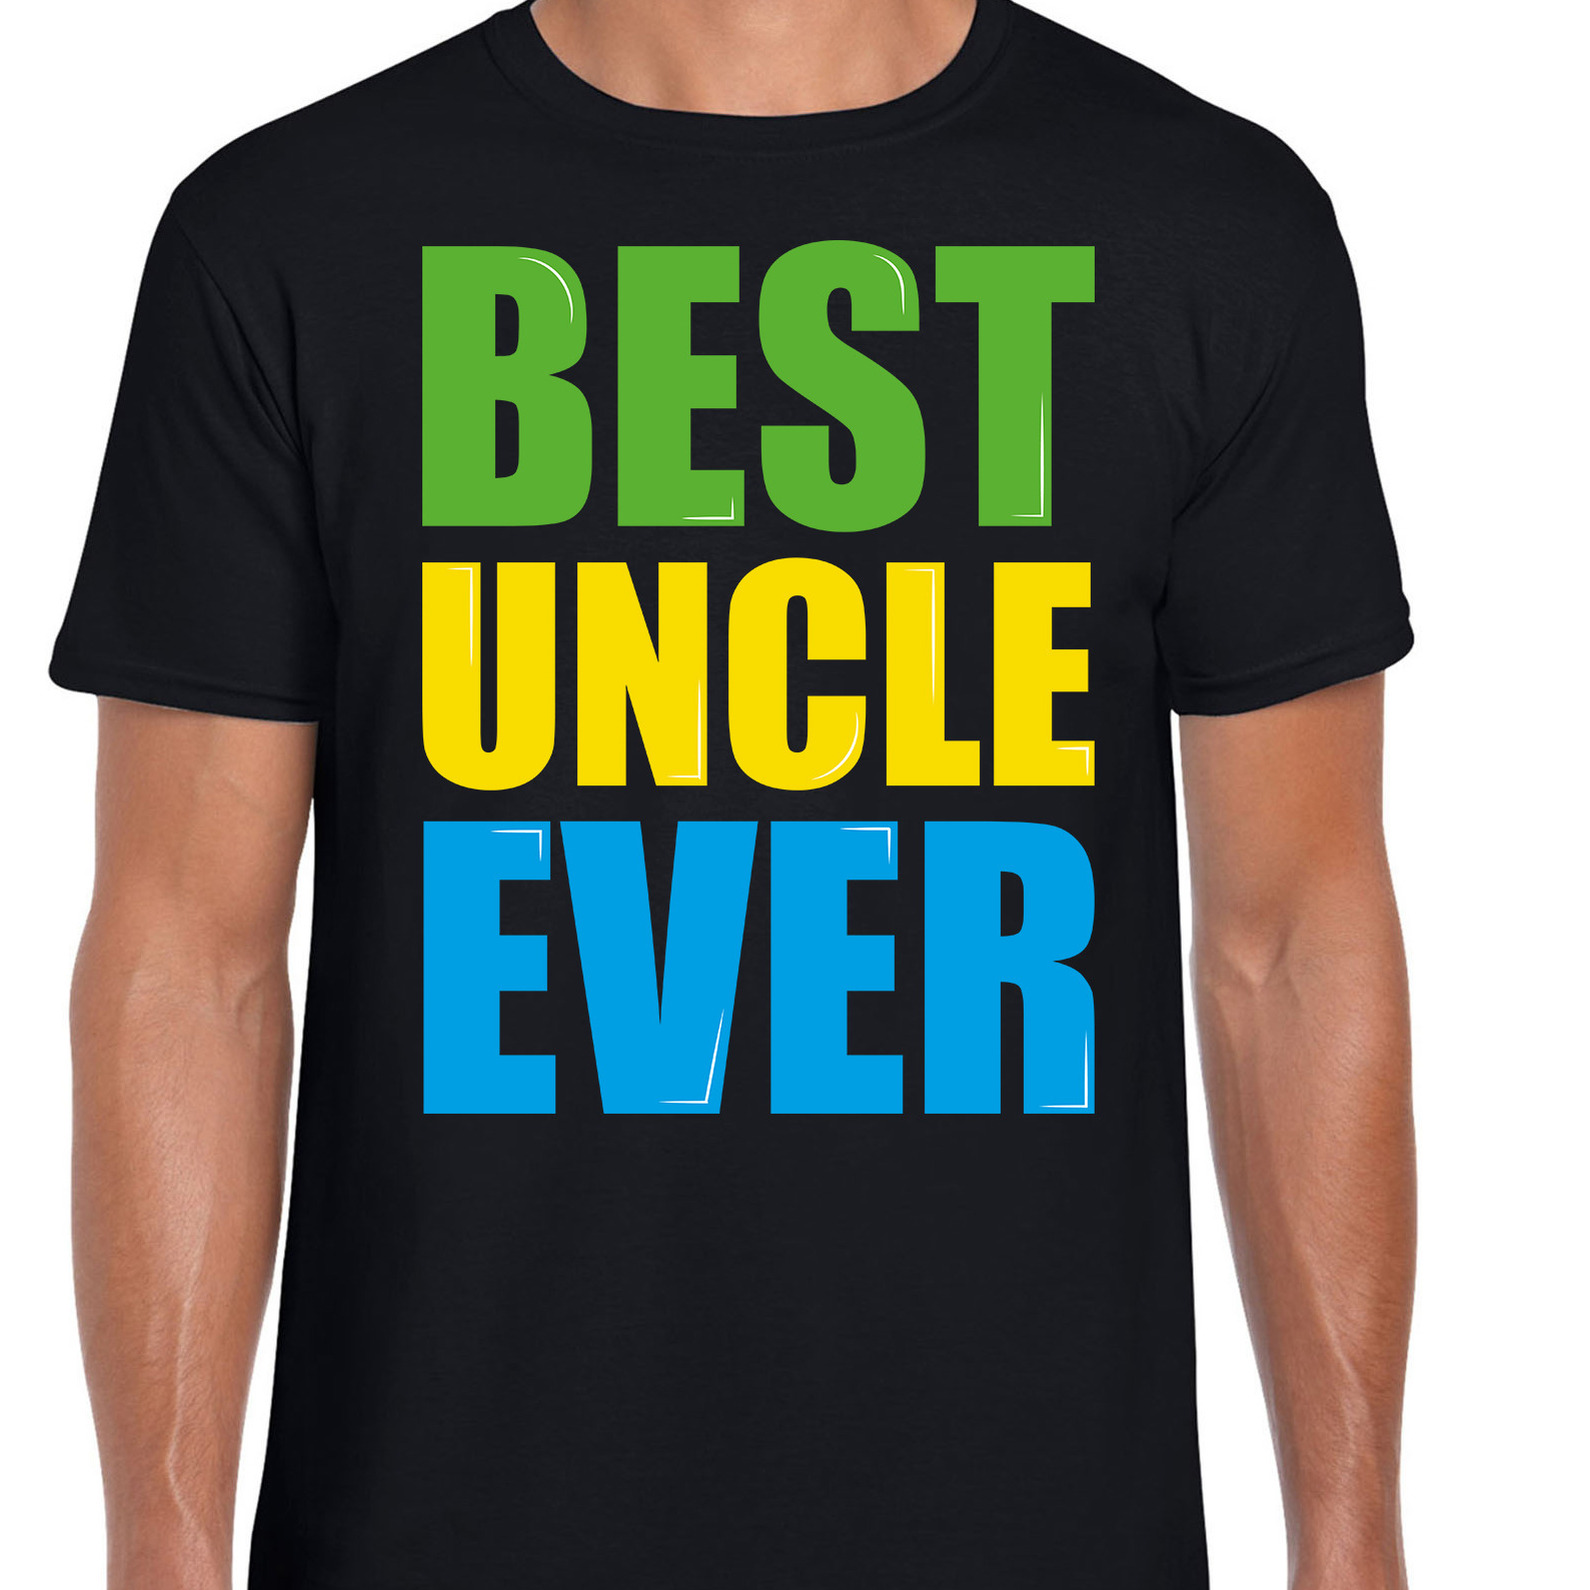 Best uncle ever-Beste oom ooit fun t-shirt zwart heren